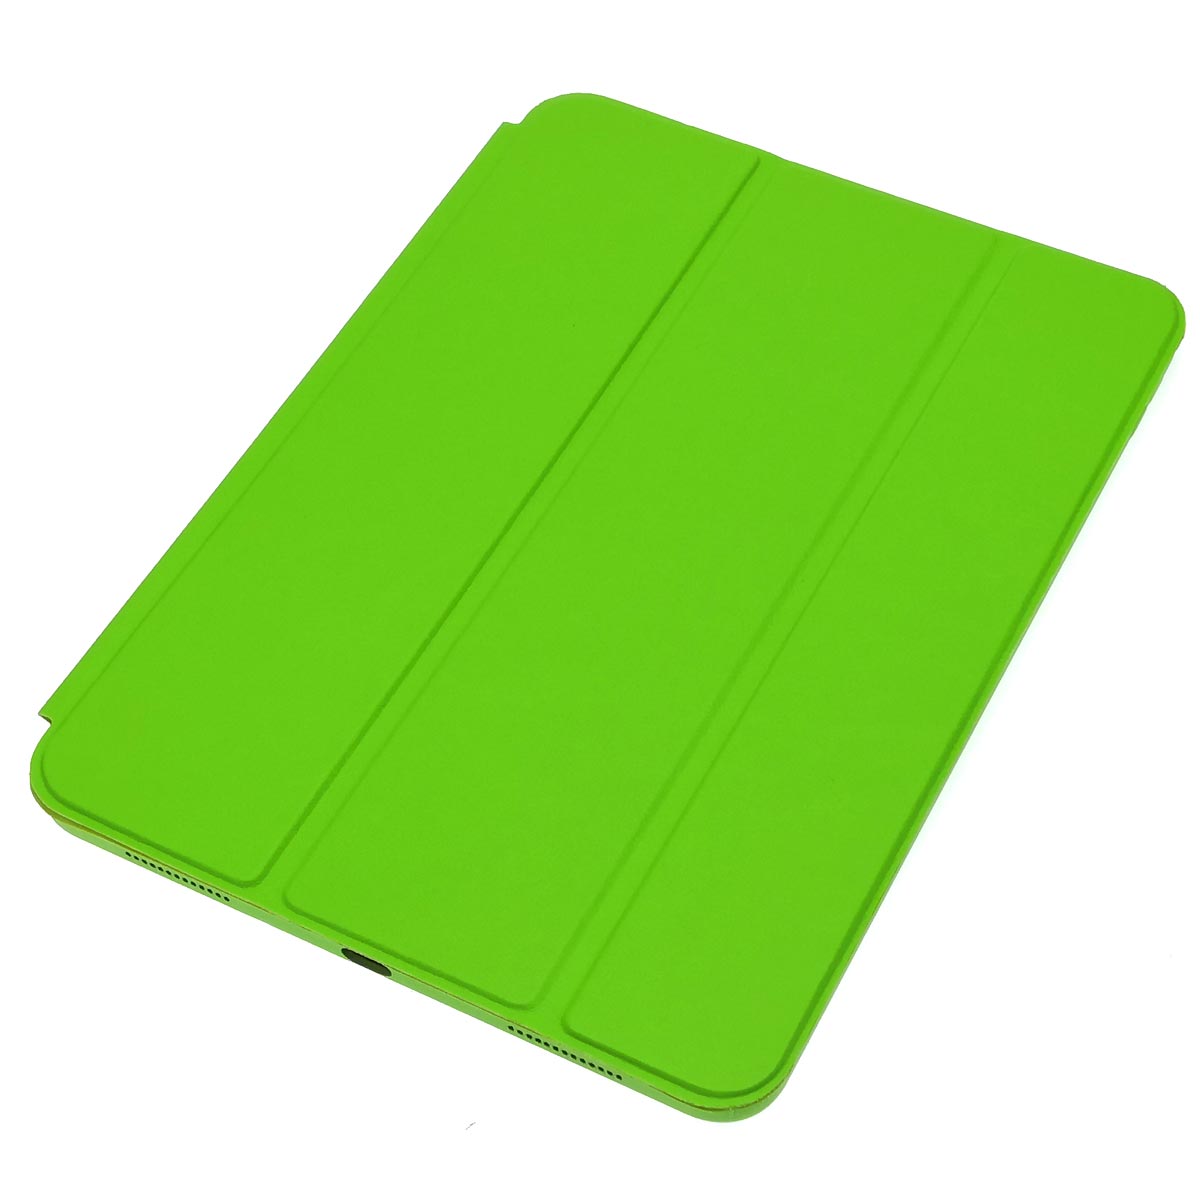 Чехол книжка SMART CASE для APPLE iPad PRO 2018, диагональ 11", экокожа, бархат, цвет желто зеленый